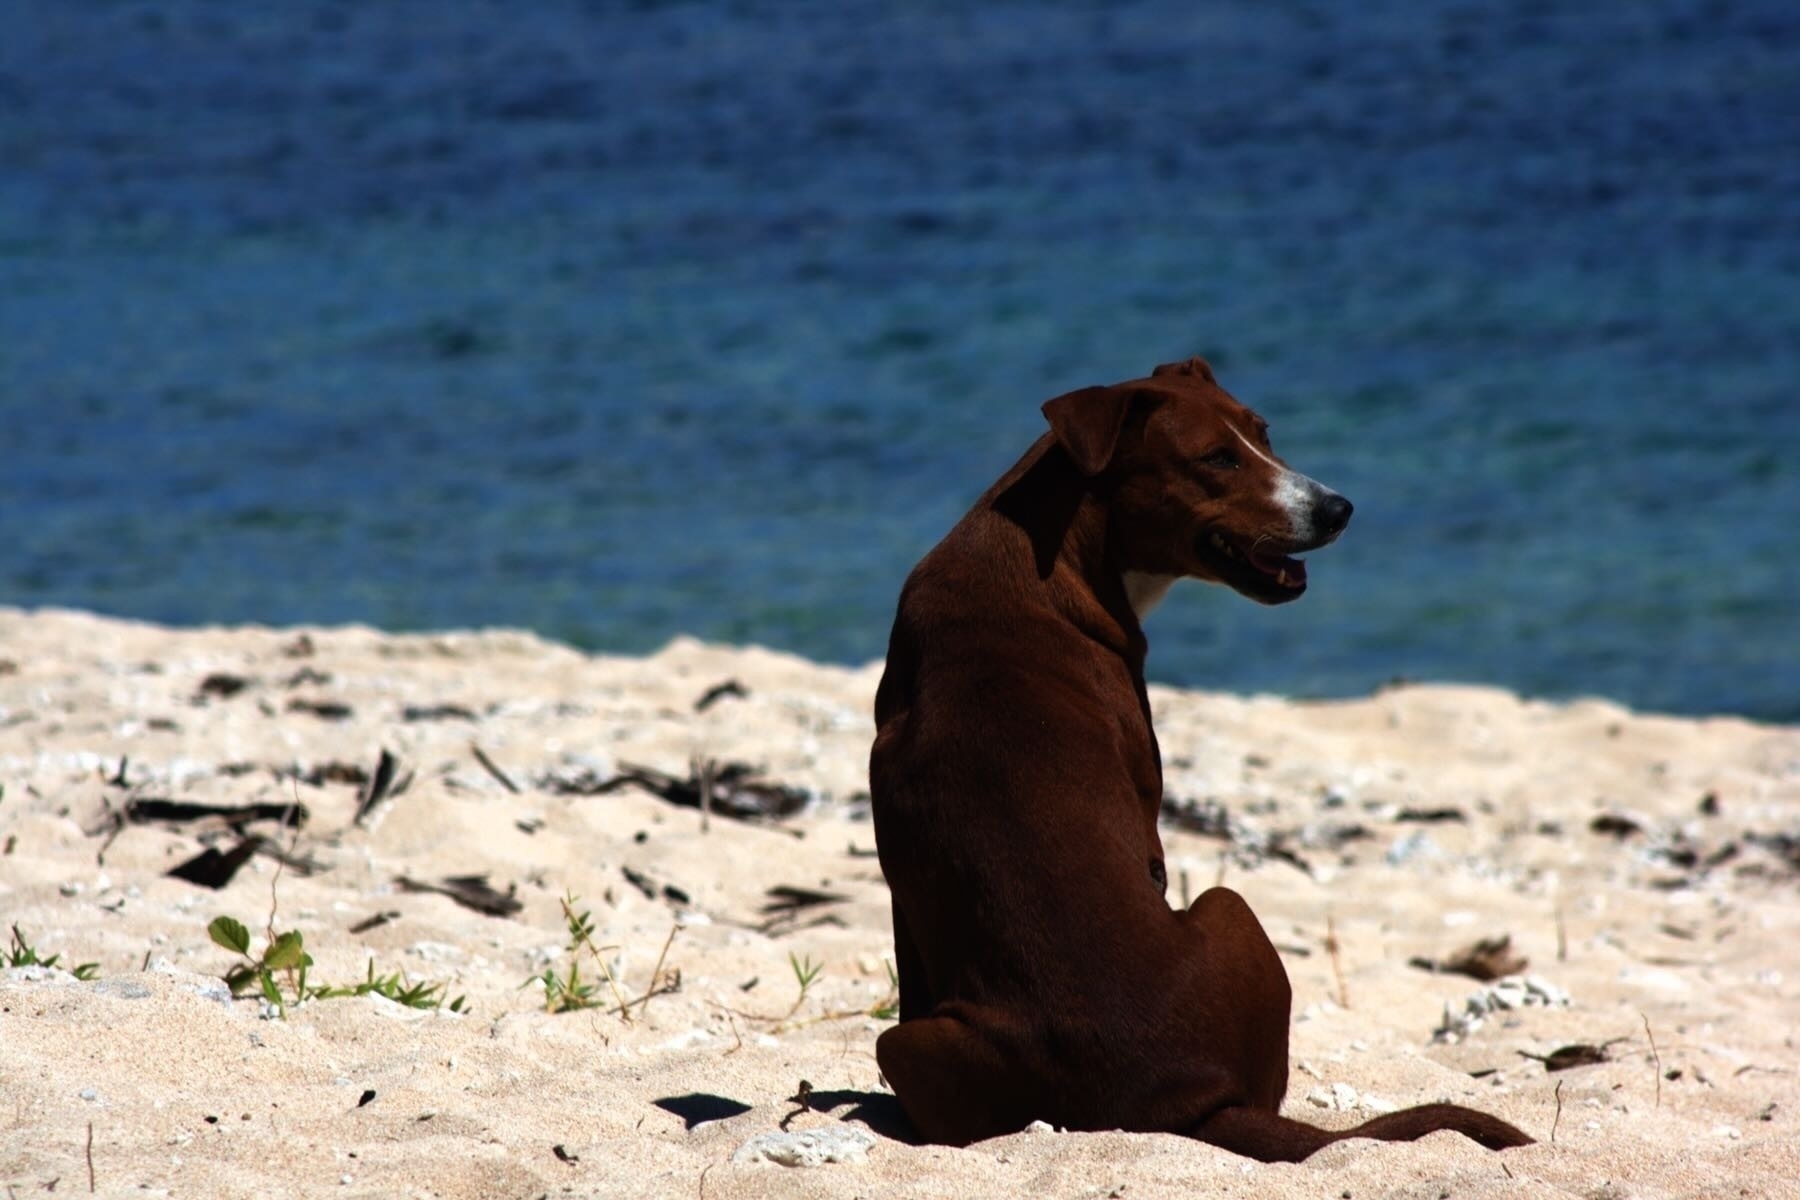 Medium sized brown dog sitting on a beach. 